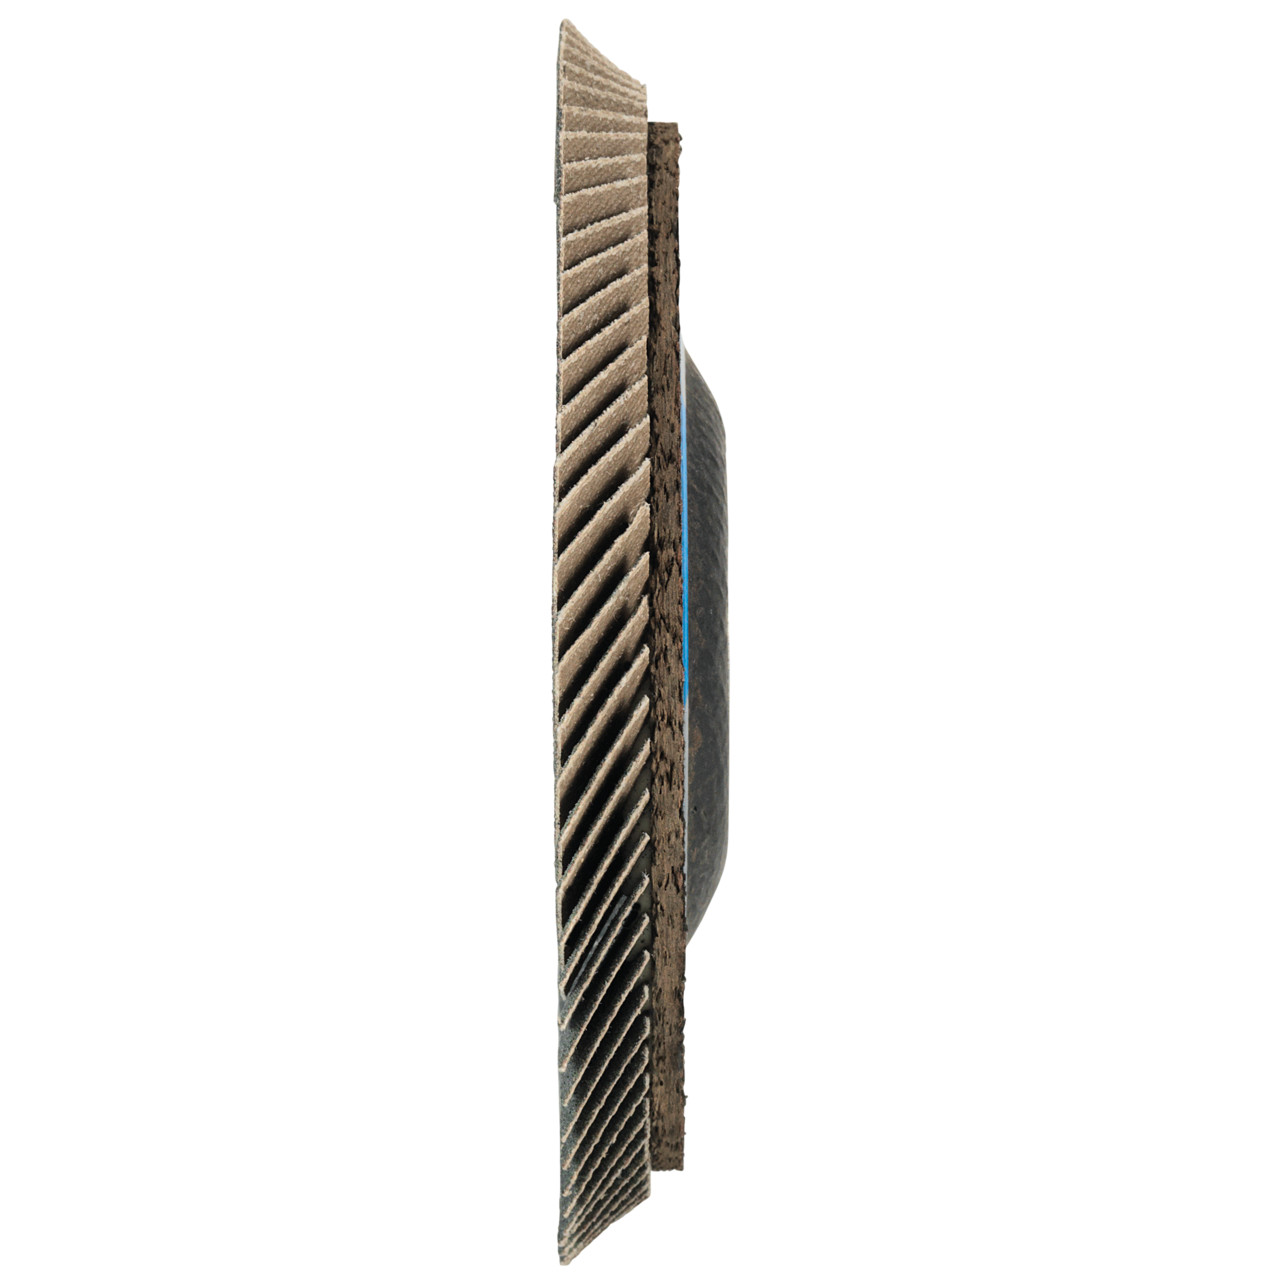 TYROLIT SOFTJOB DxH 115x22,23 2in1 voor staal en roestvrij staal, P60, vorm: 28S - rechte uitvoering (SOFTJOB-lamellenschijf), Art. 246988